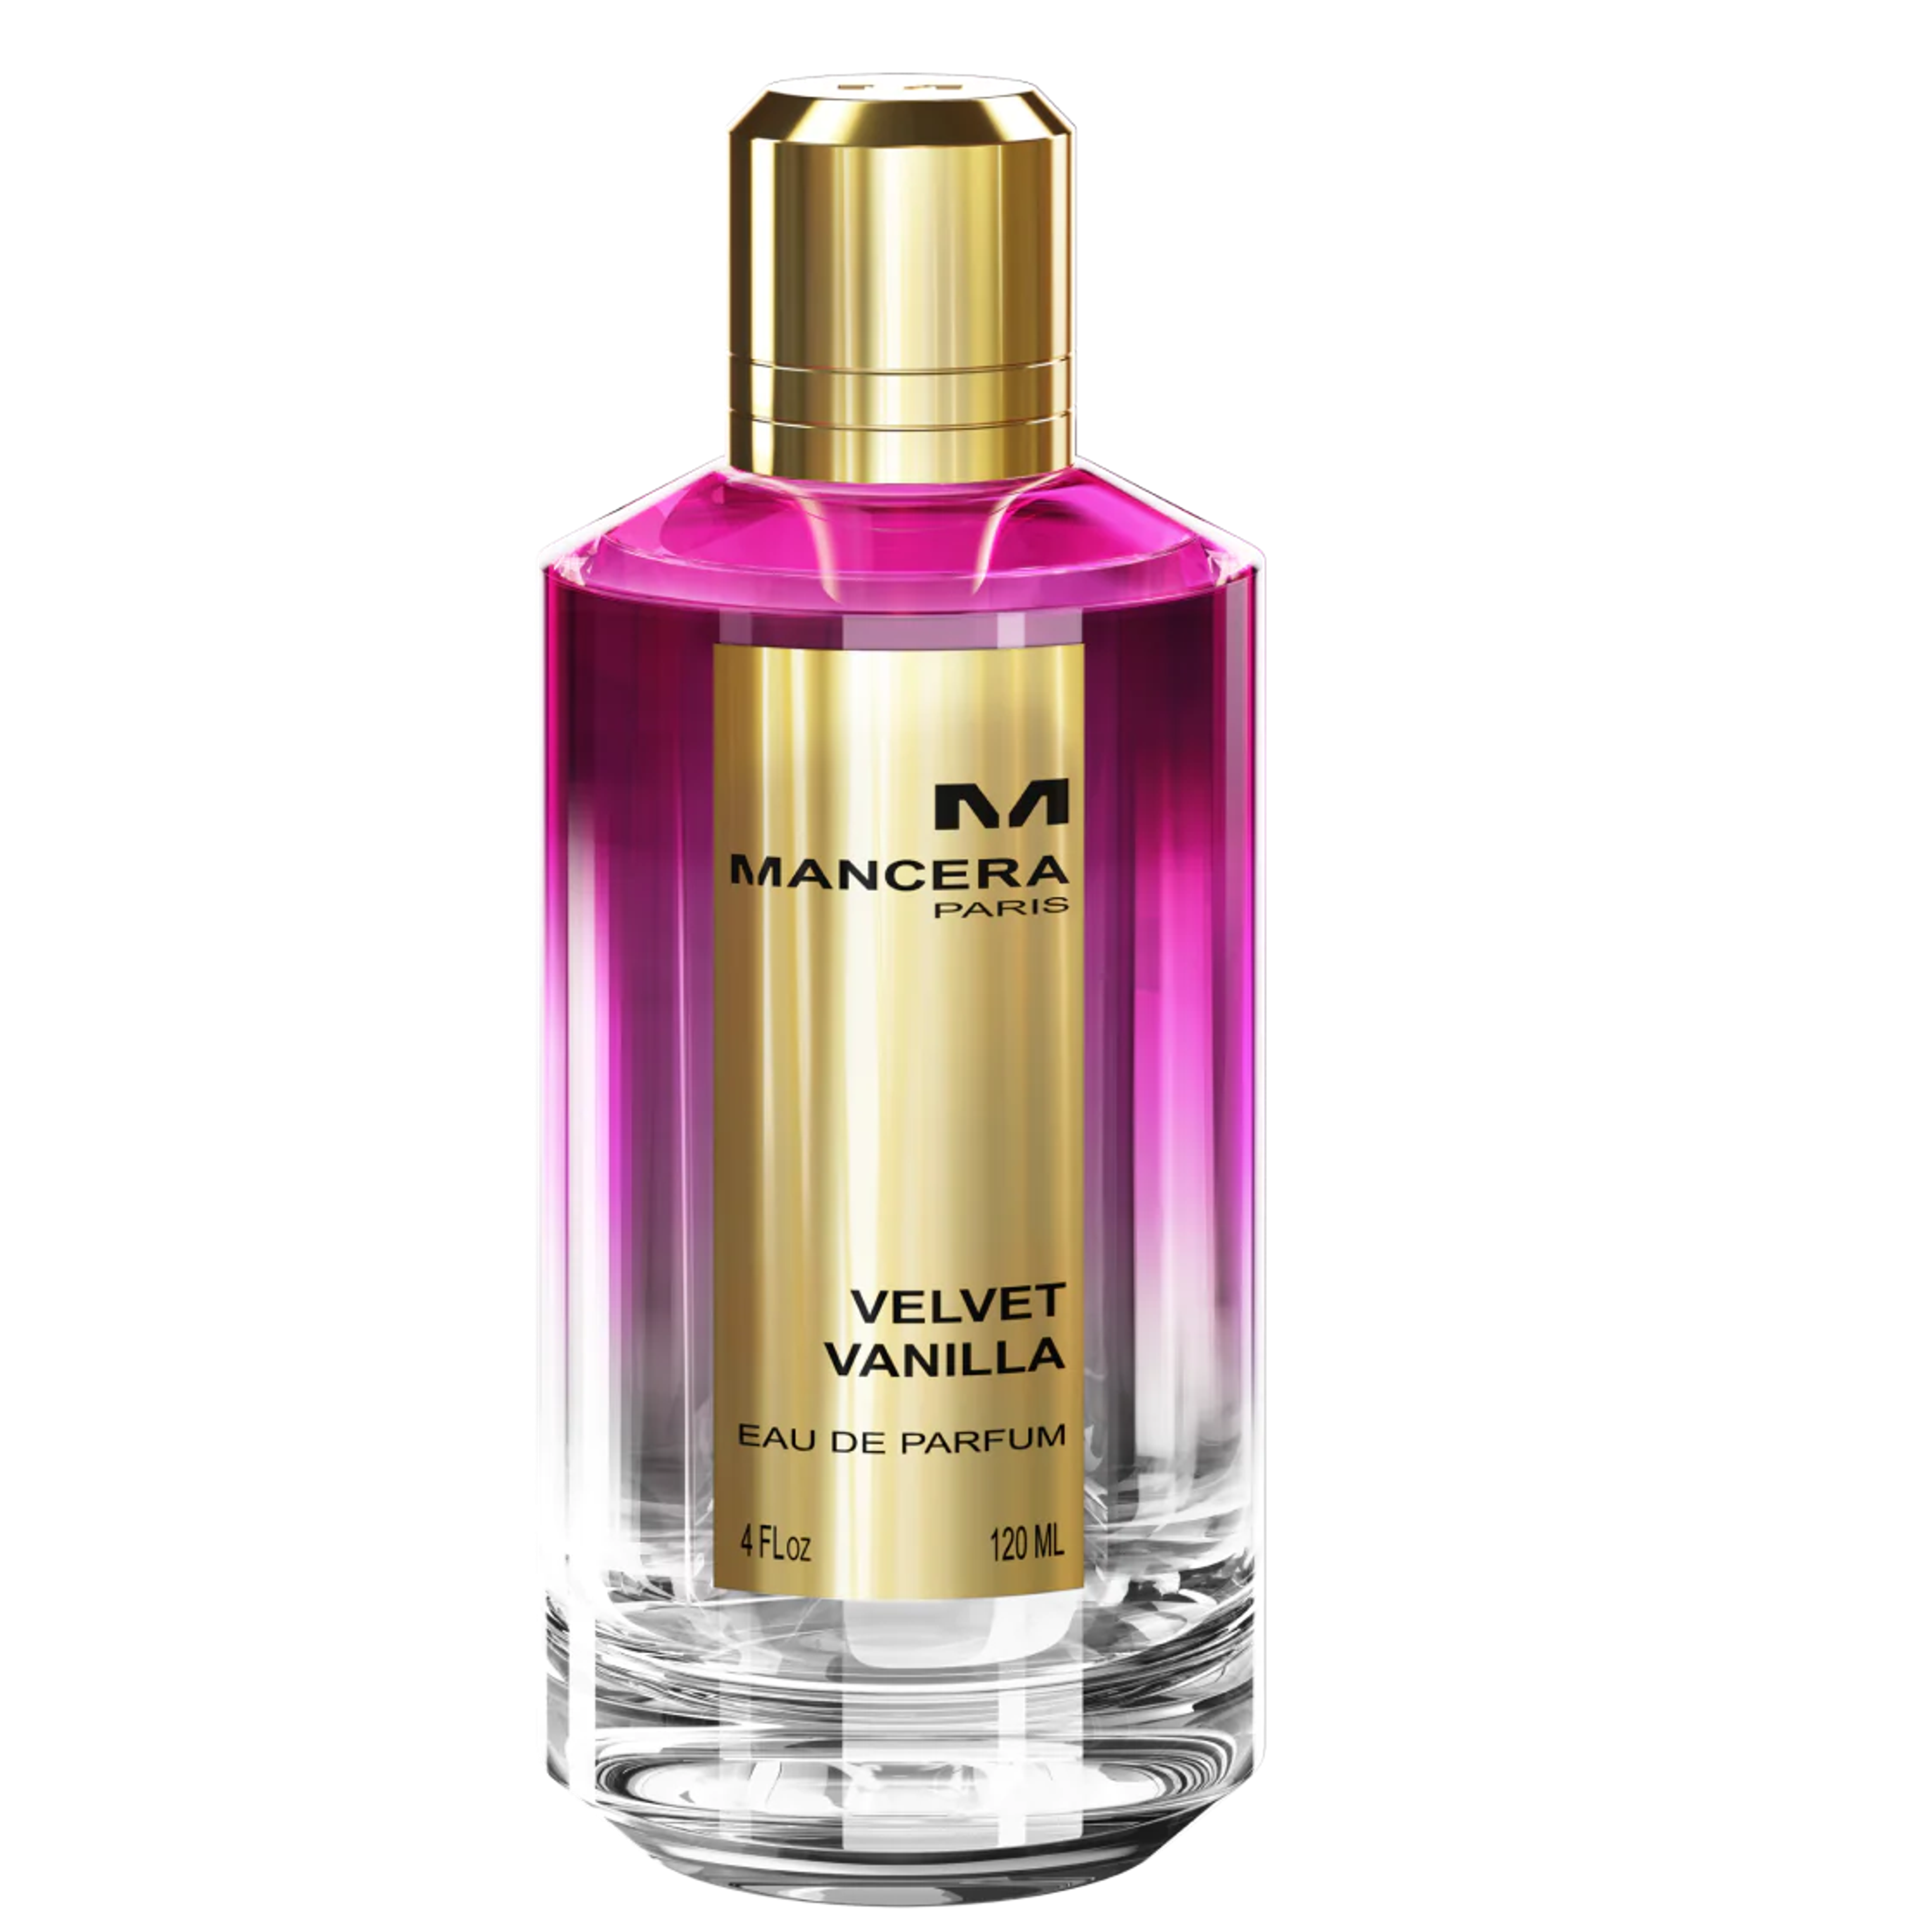 Velvet Vanilla by Mancera